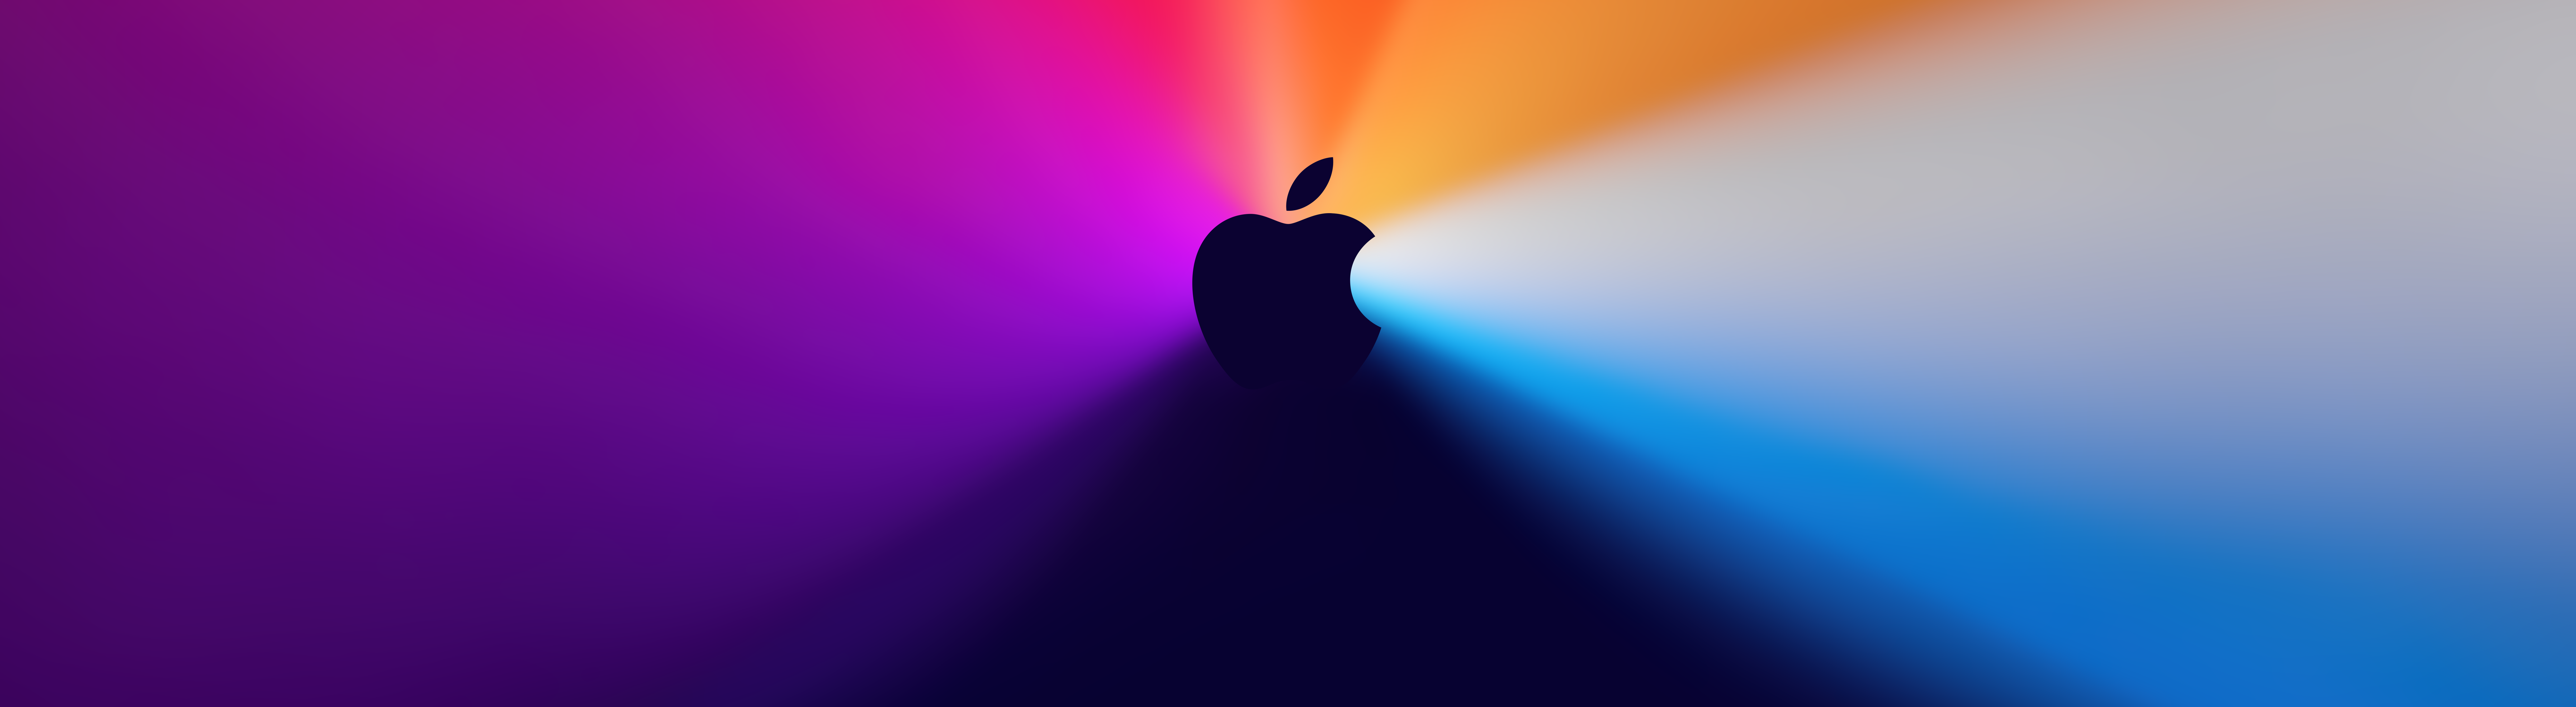 Download apple desktop wallpapers Bhmpics